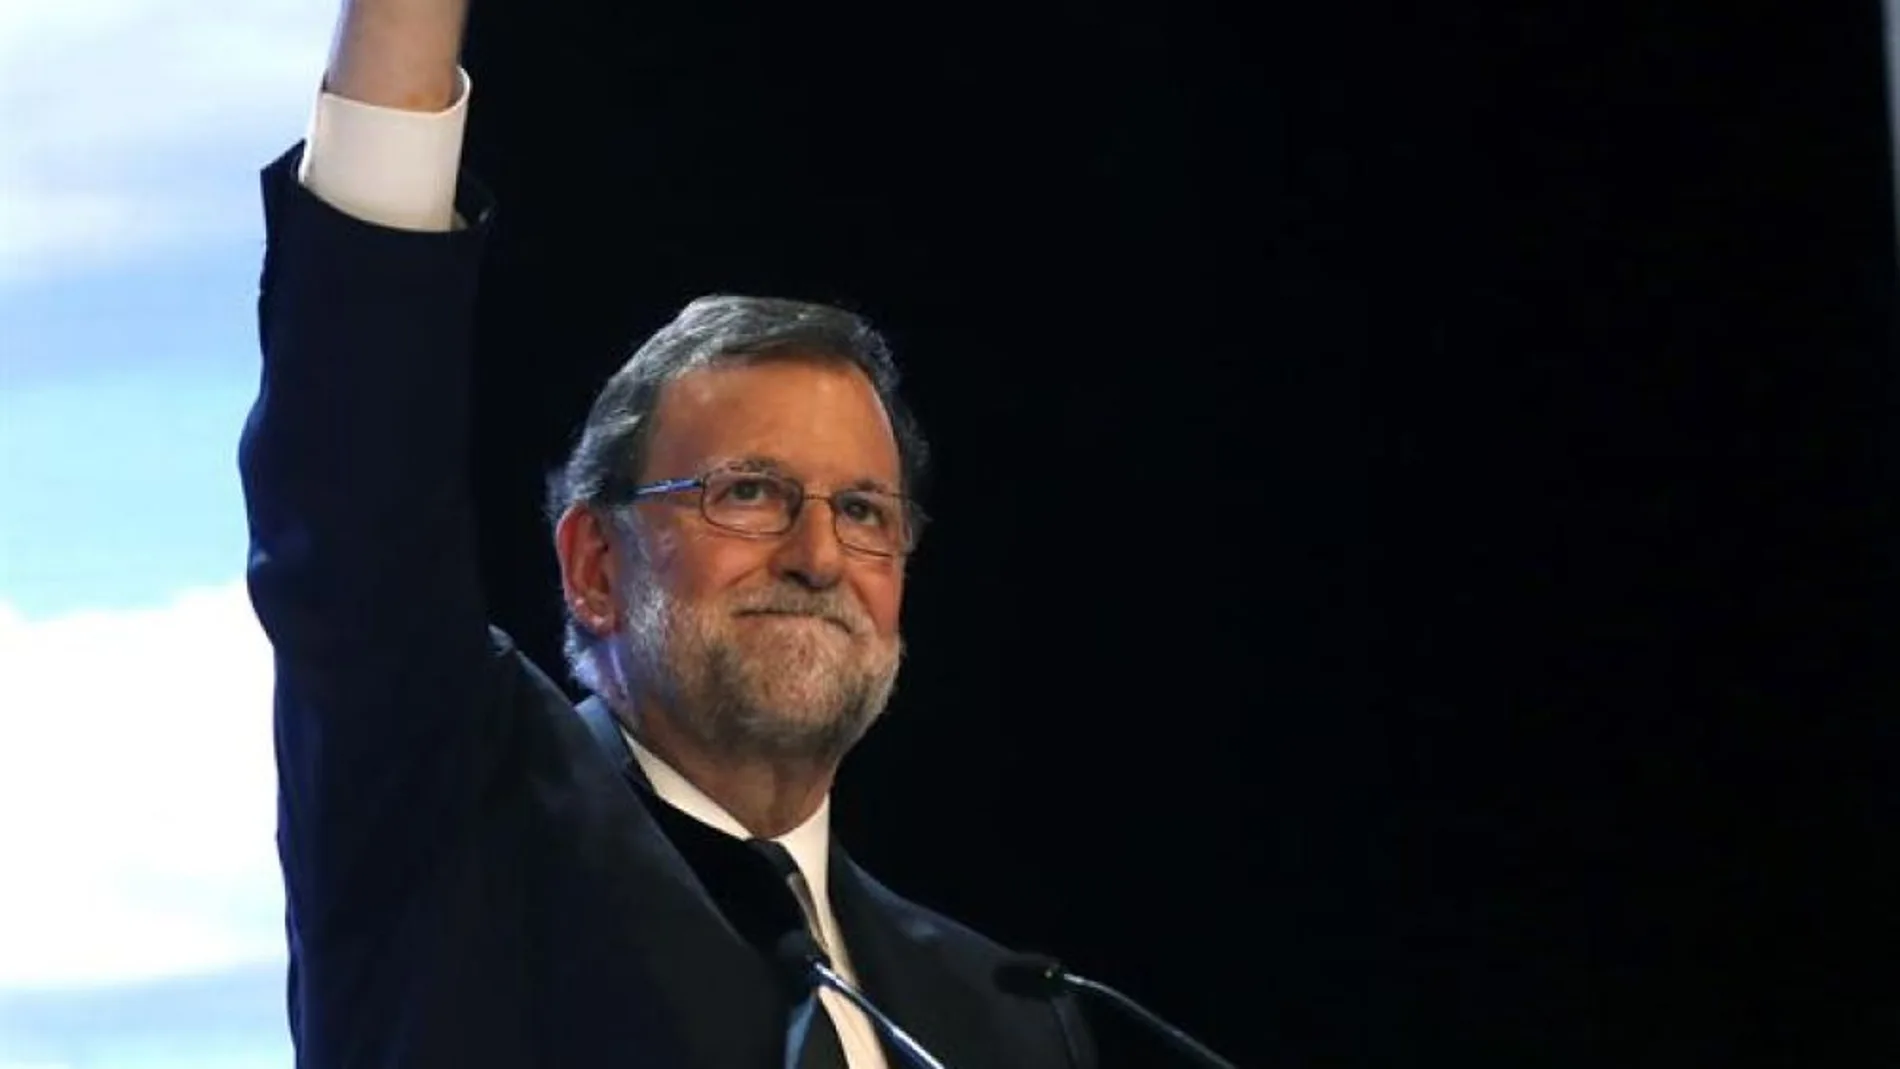 Noticias 2 Antena 3 (20-07-18) Rajoy reivindica su labor frente a los independentistas y la crisis económica: "Dejamos una España mejor"